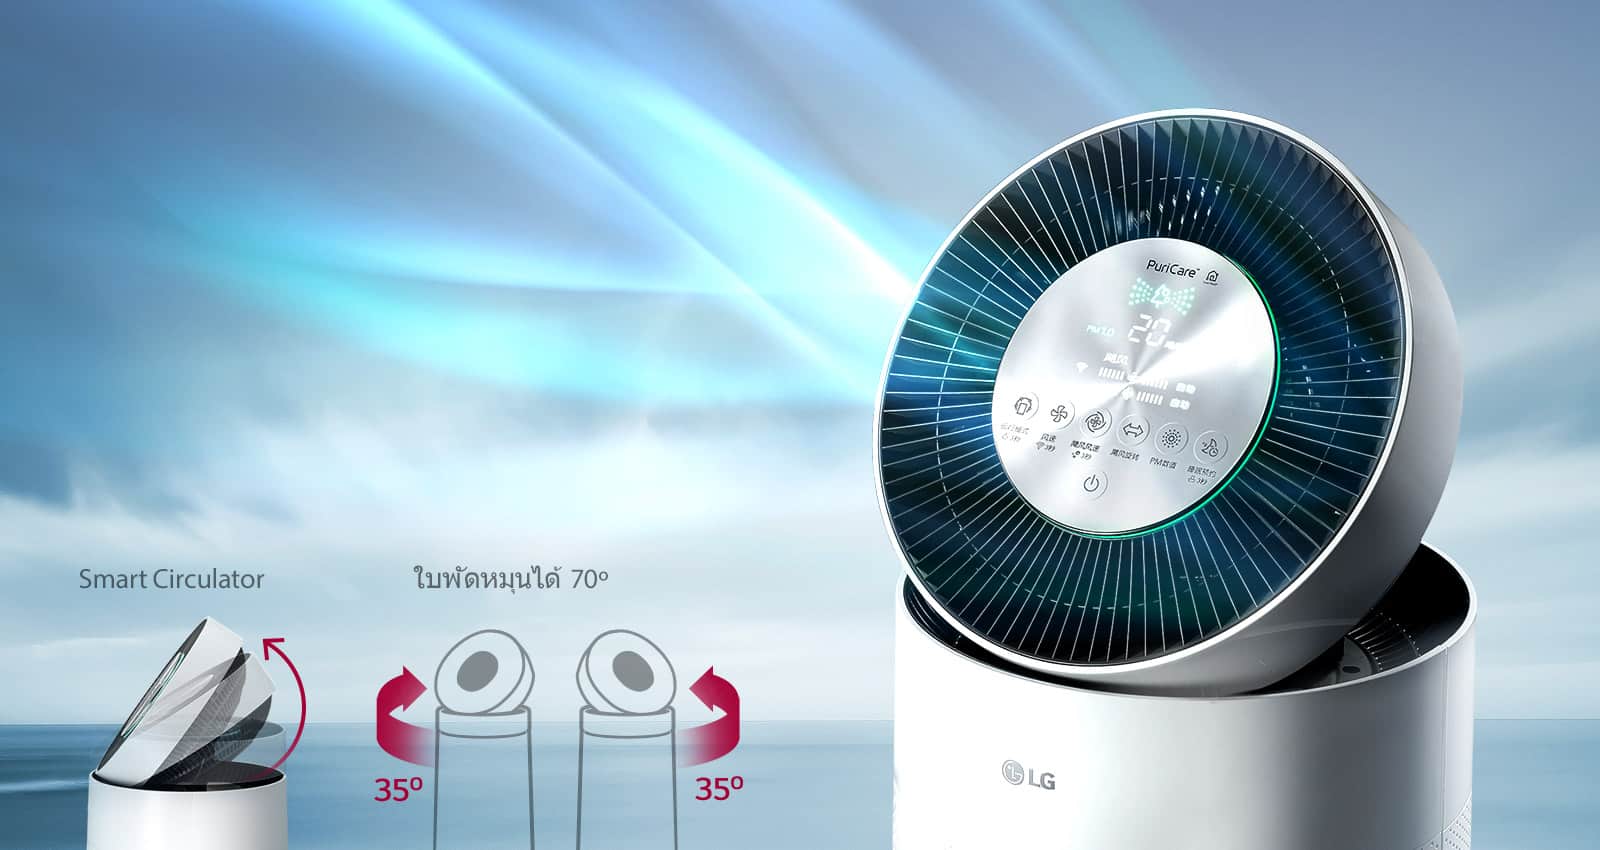 LG นำเสนอนวัตกรรมเครื่องฟอกอากาศ LG PuriCare เพื่อต่อสู้กับวิกฤติฝุ่นในปัจจุบัน 3